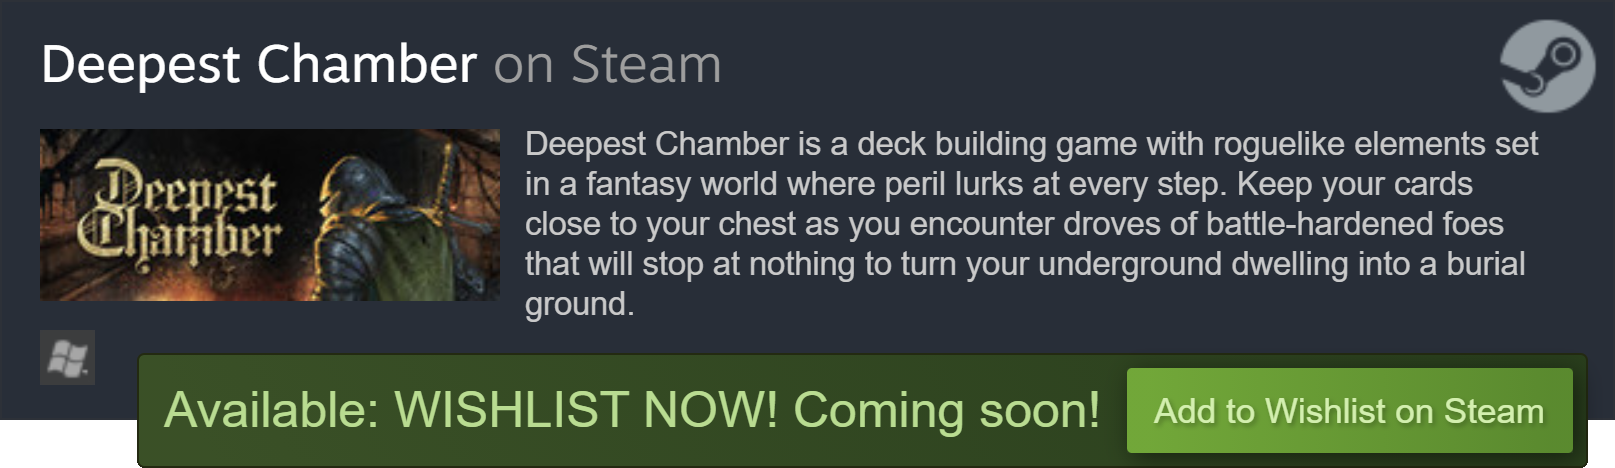 steam_widget_deepestchamber